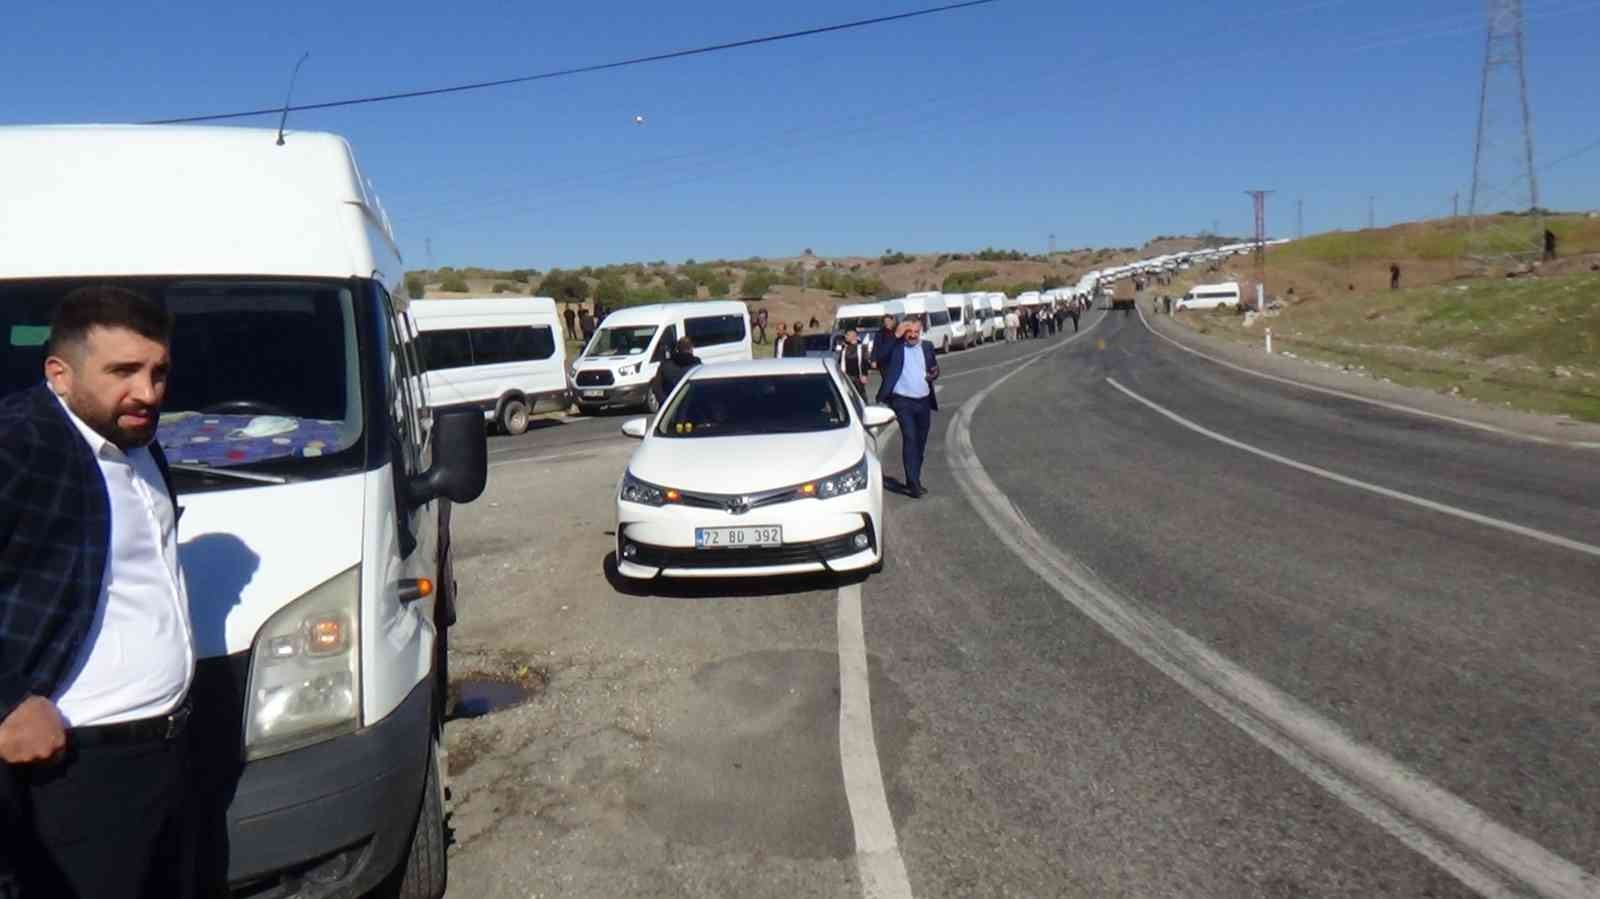 Sason’dan 500 araçlık konvoy, Cumhurbaşkanı Erdoğan’ı karşılamak için yola çıktı #batman